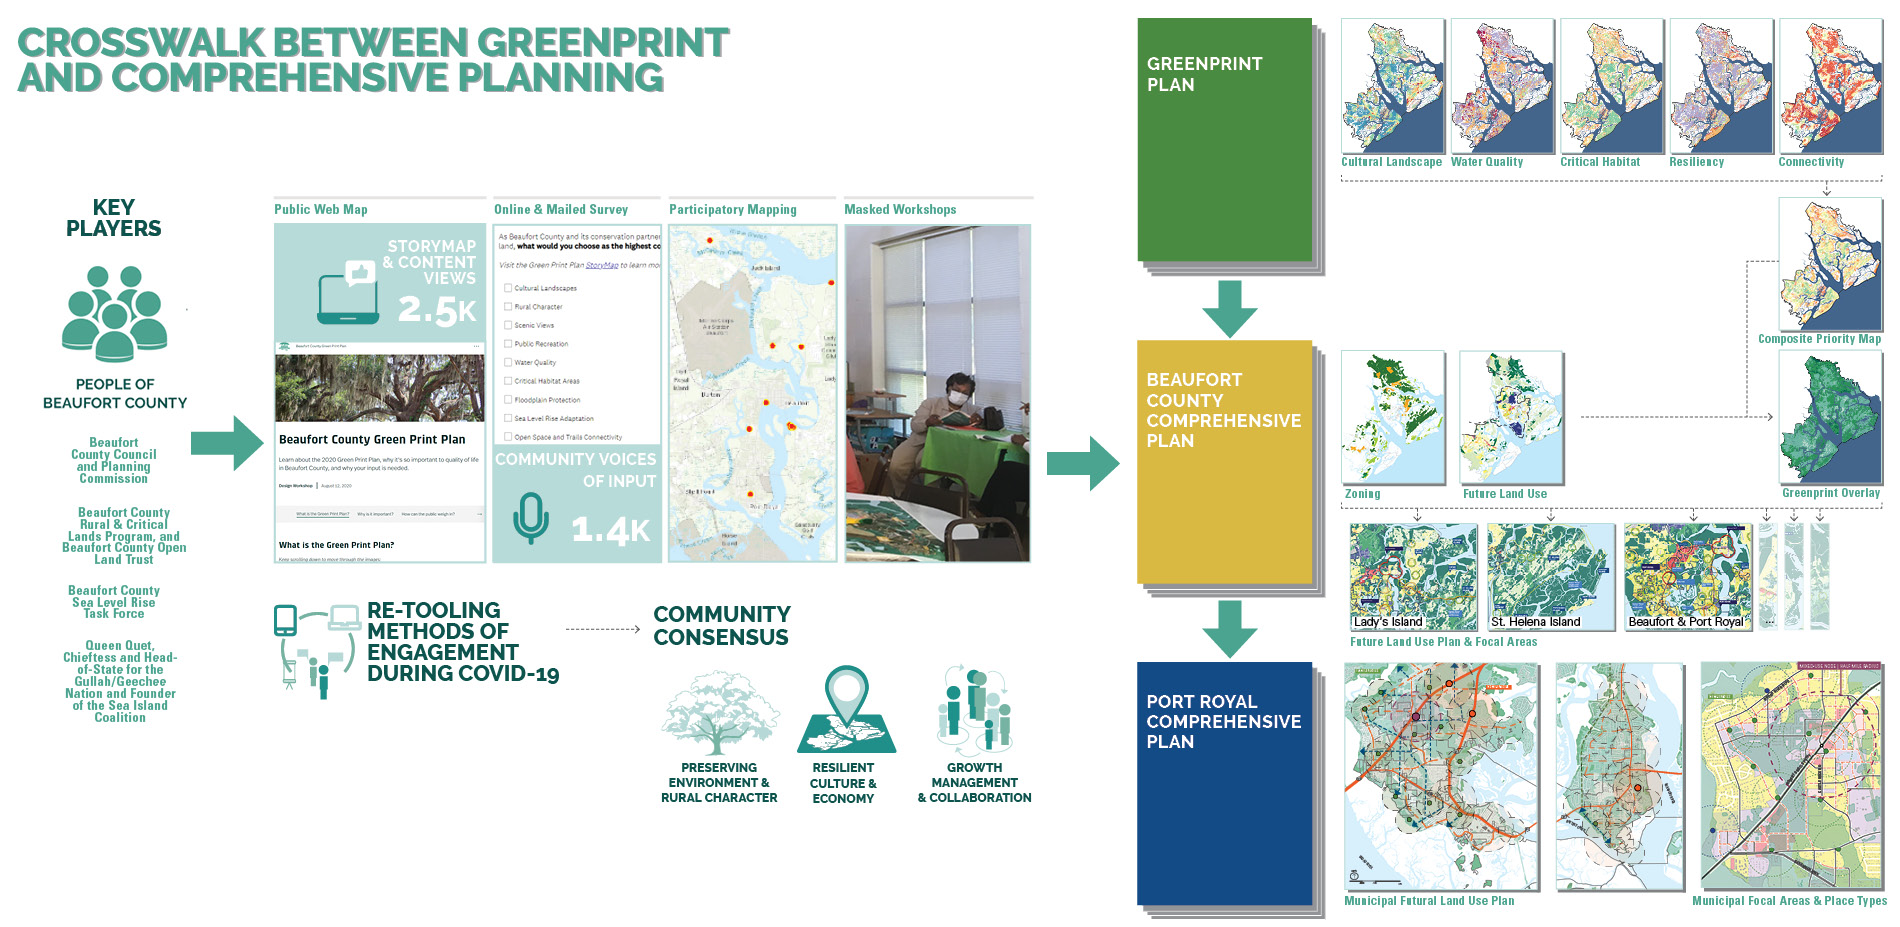 Crosswalk Between Greenprint and Comprehensive Planning